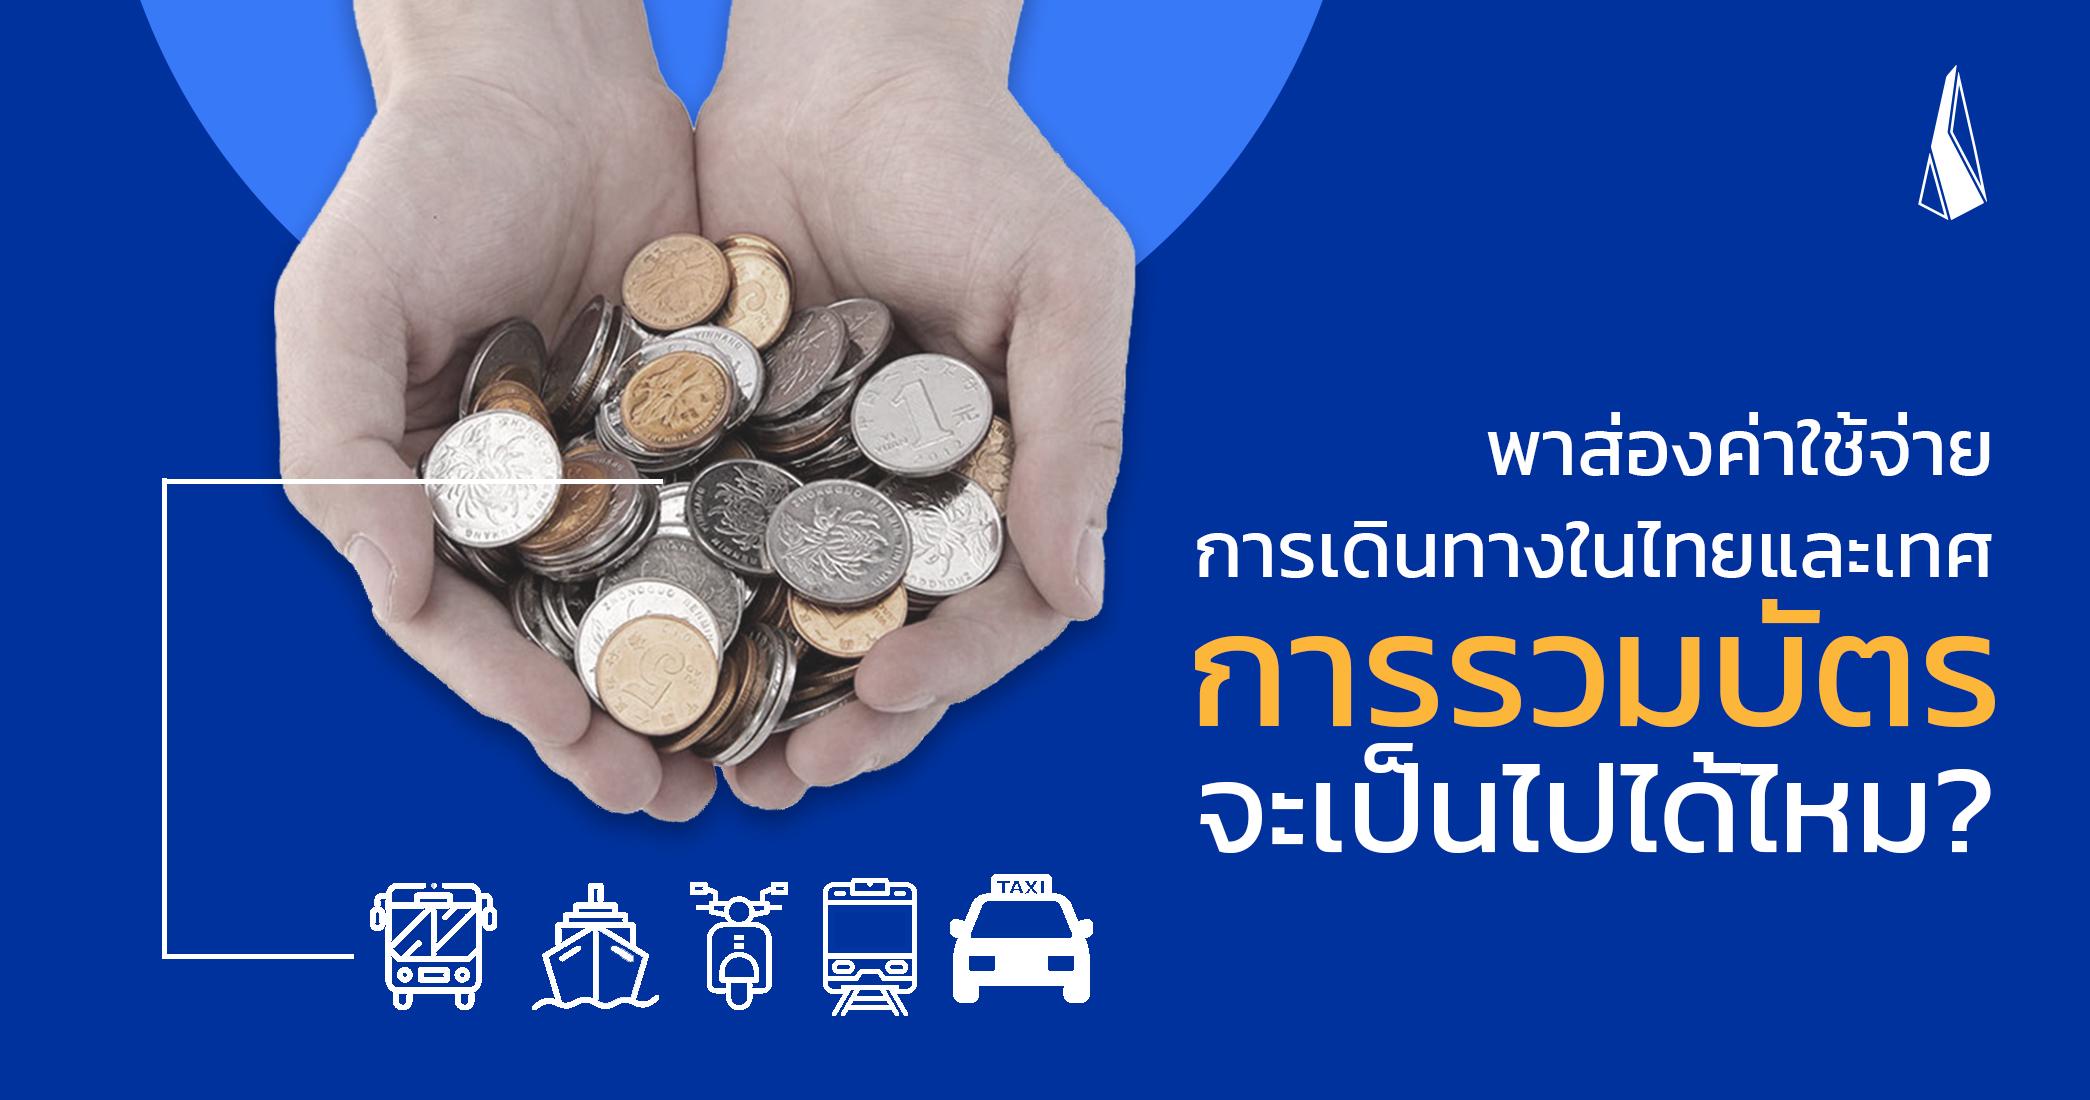 รูปบทความ พาส่องค่าใช้จ่ายการเดินทางในไทยและเทศ การรวมบัตรจะเป็นไปได้ไหม?